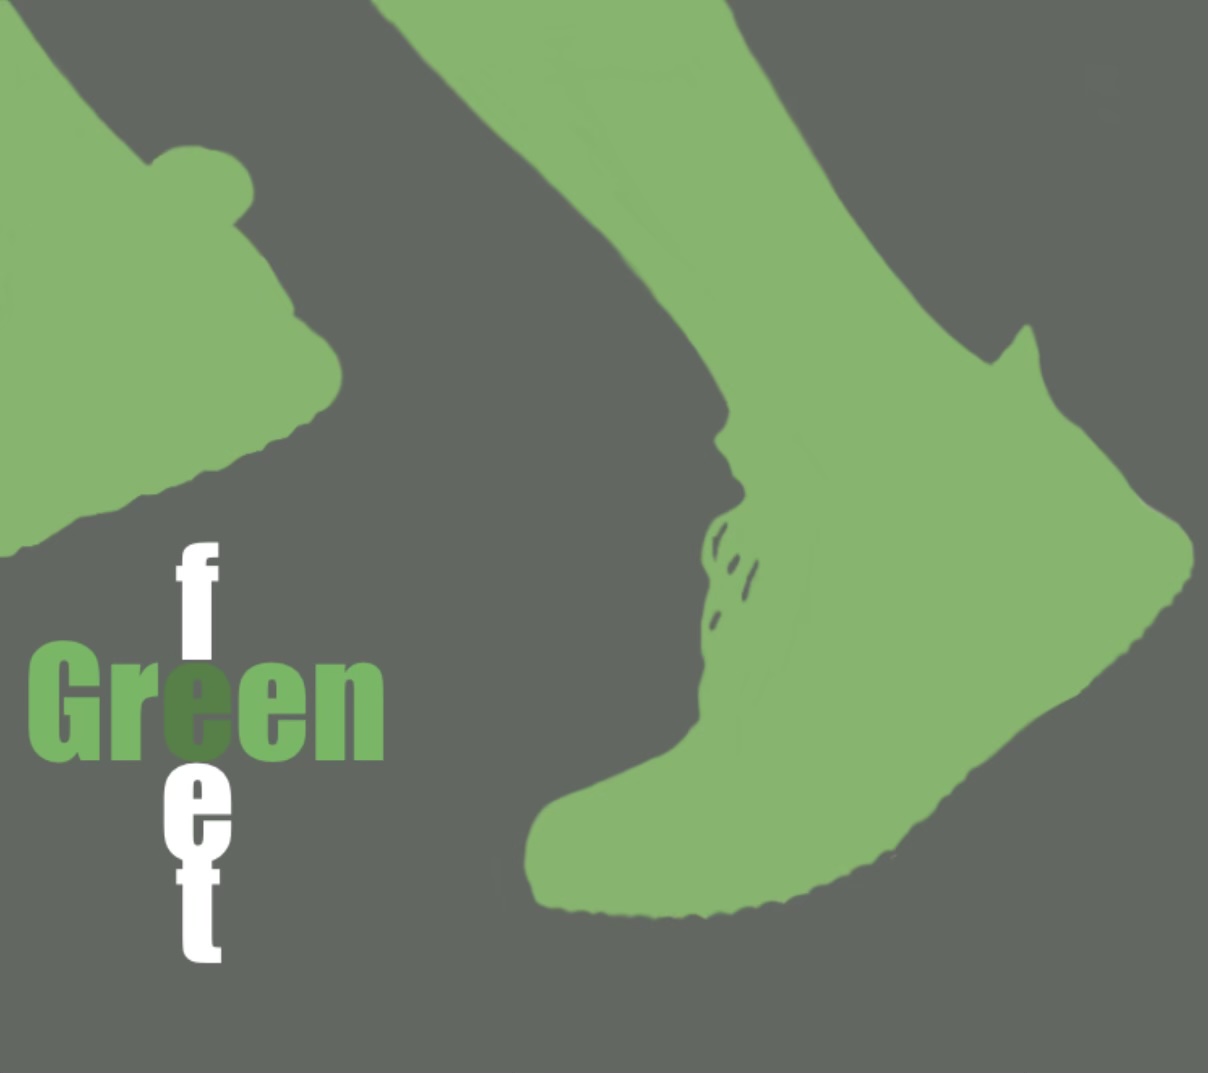 Vorschaubild für den Beitrag "Green Feet" - die nachhaltige Sport-App